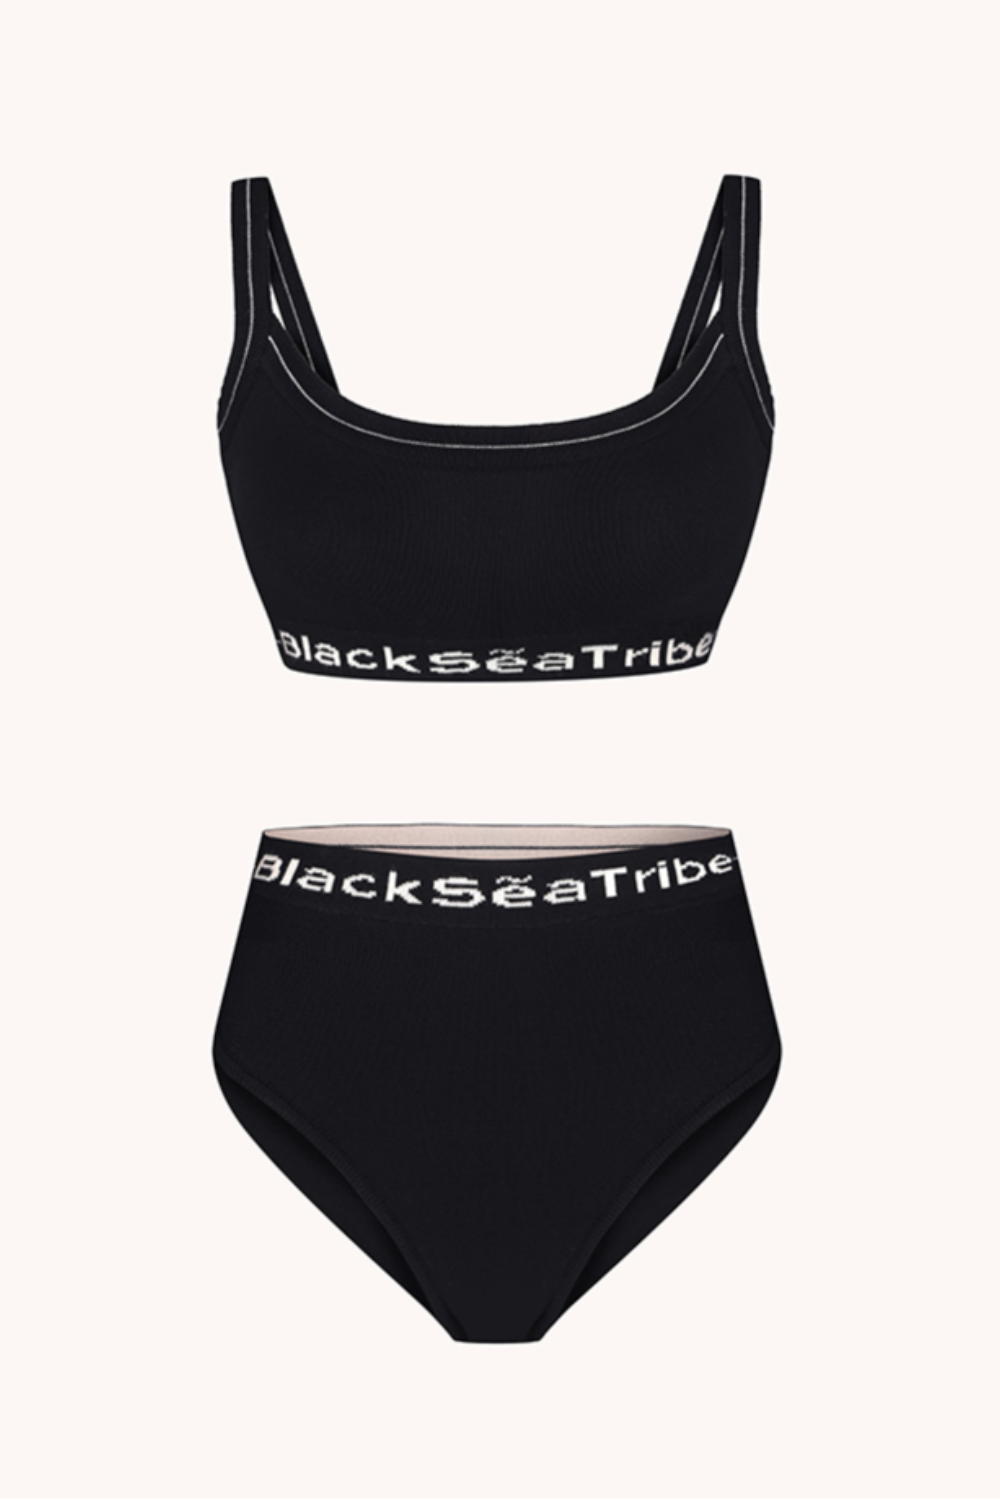 Spodní prádlo &quot;Pletené&quot;, černé, (BlackSeaTribe), whitenessKNITTEDblack